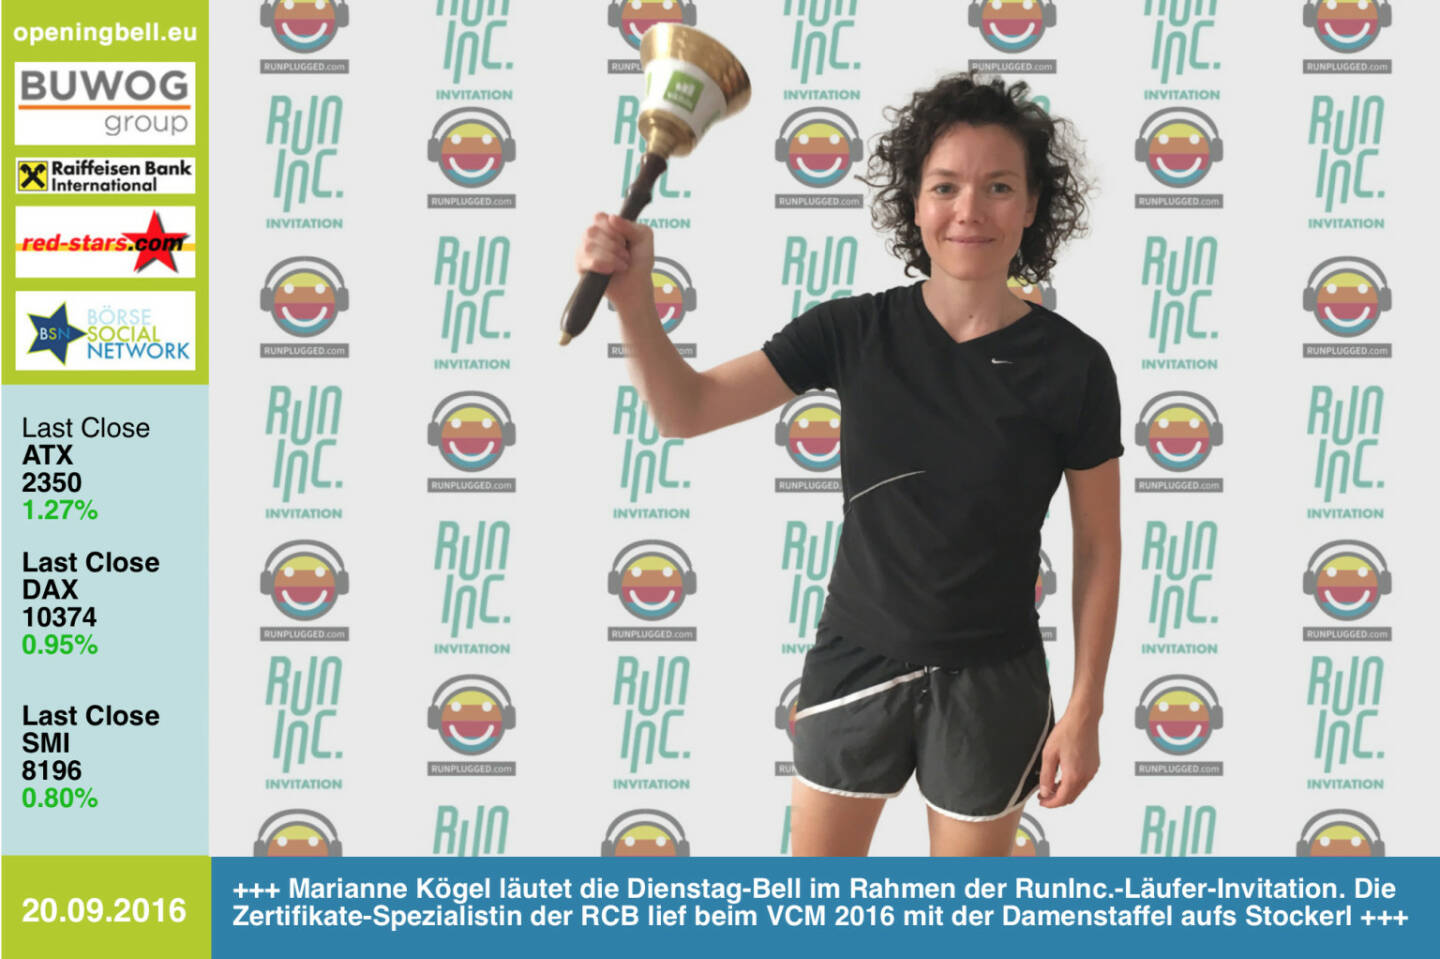 #openingbell am 20.9.: Marianne Kögel läutet die Opening Bell für Dienstag im Rahmen der RunInc.-Läufer-Invitation. Die Zertifikate-Spezialistin der RCB lief beim VCM 2016 mit der Damenstaffel aufs Stockerl, am vergangenen Wochenende war sie fünfbeste Frau beim Halbmarathon am Stubenbergsee, 2. AK, siehe http://photaq.com/page/index/2348 http://www.rcb.at http://www.runinc.at http://www.runplugged.com http://www.openingbell.eu